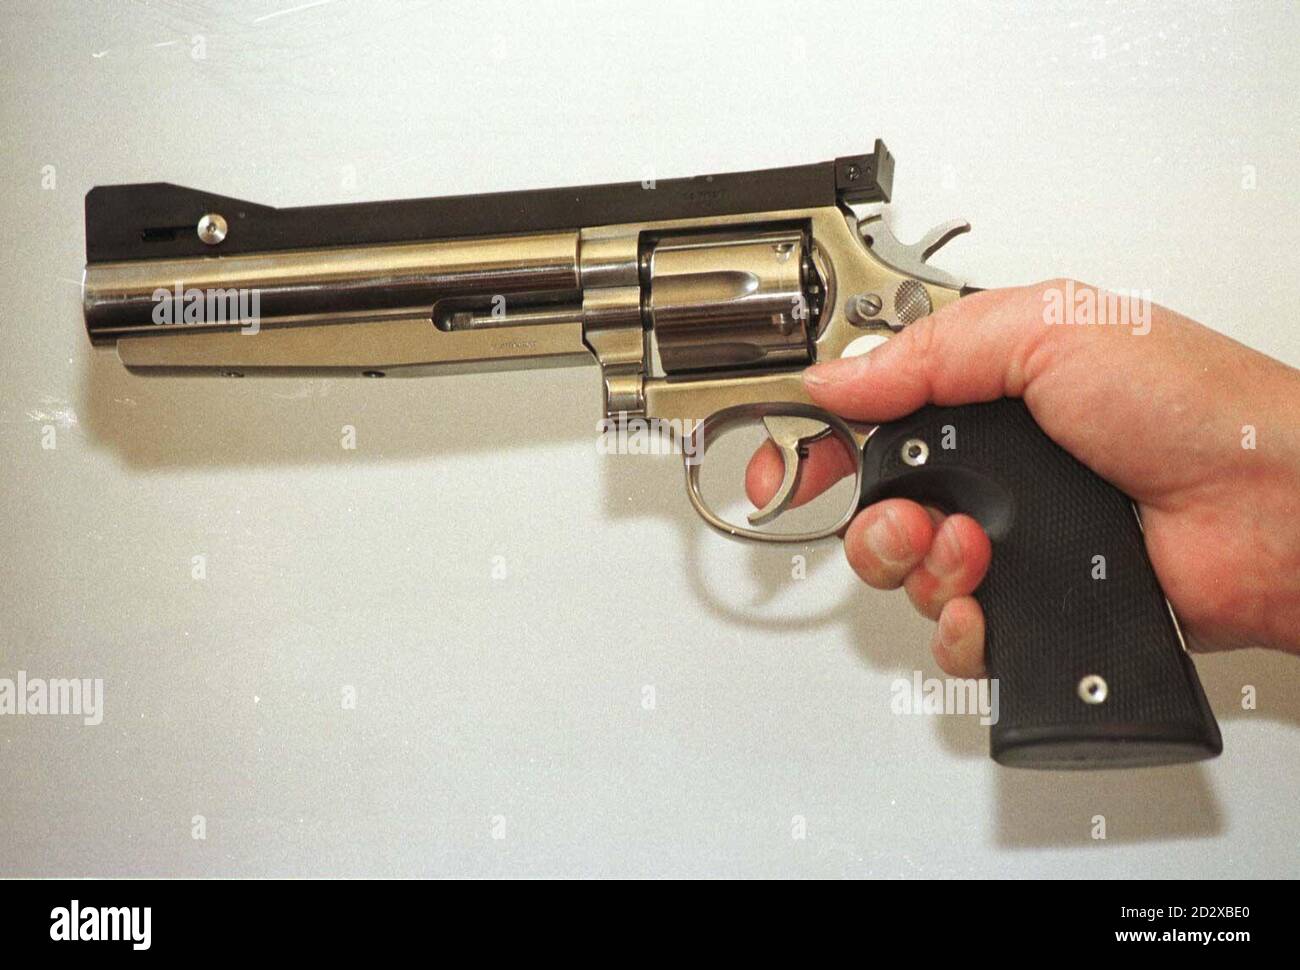 Uno speciale Smith & Wesson .38, uno dei cannoni che sarà reso illegale dopo una sentenza del governo in seguito alla relazione di Lord Cullen sul massacro di Dunblane. Guarda la storia della PA DUNBLANE Guns. Foto di Paul Barker/PA Foto Stock